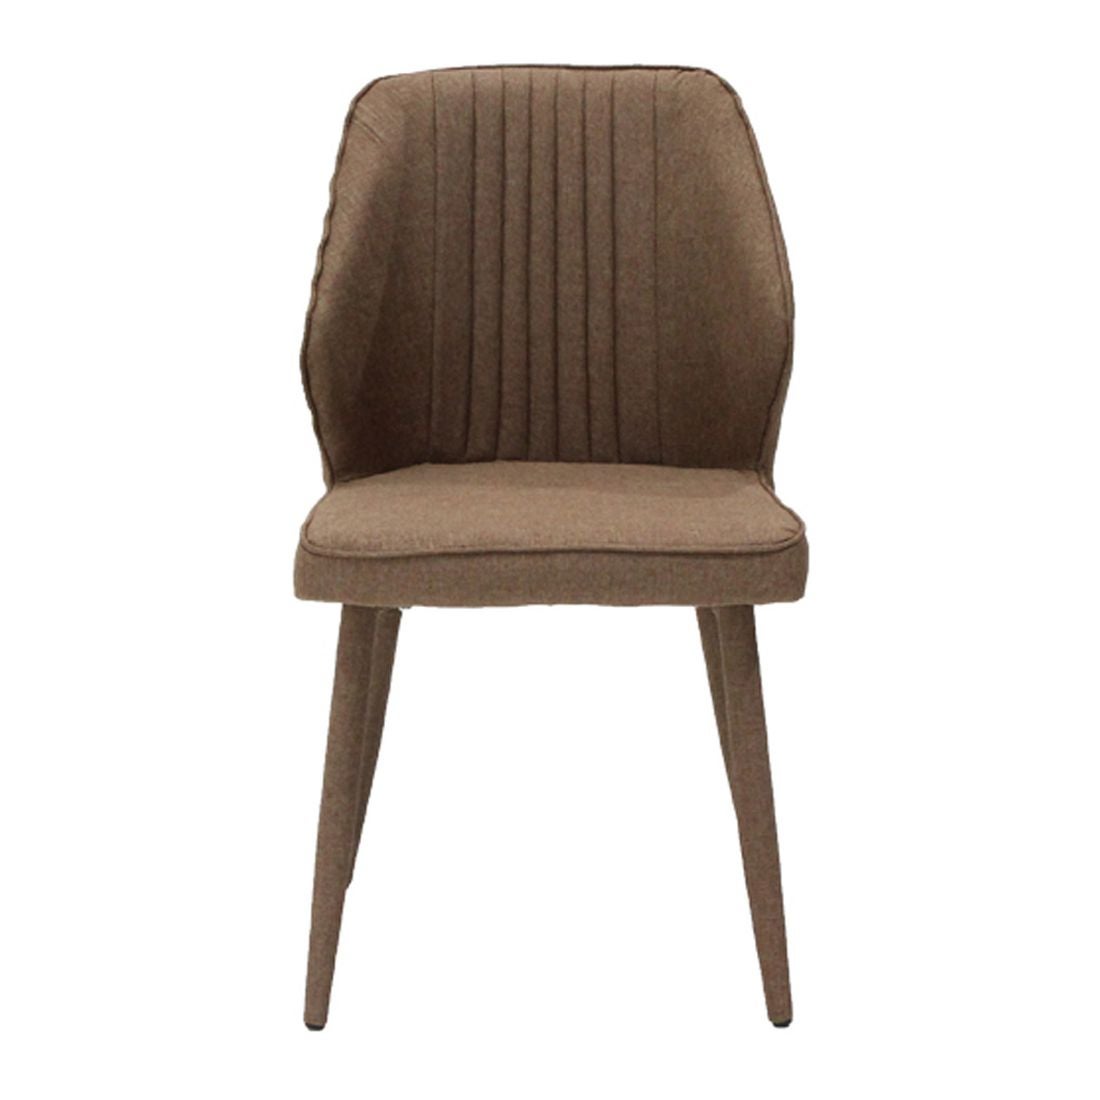 เก้าอี้ทานอาหาร เก้าอี้ไม้เบาะผ้า รุ่น Lacoast สีสีน้ำตาล-SB Design Square